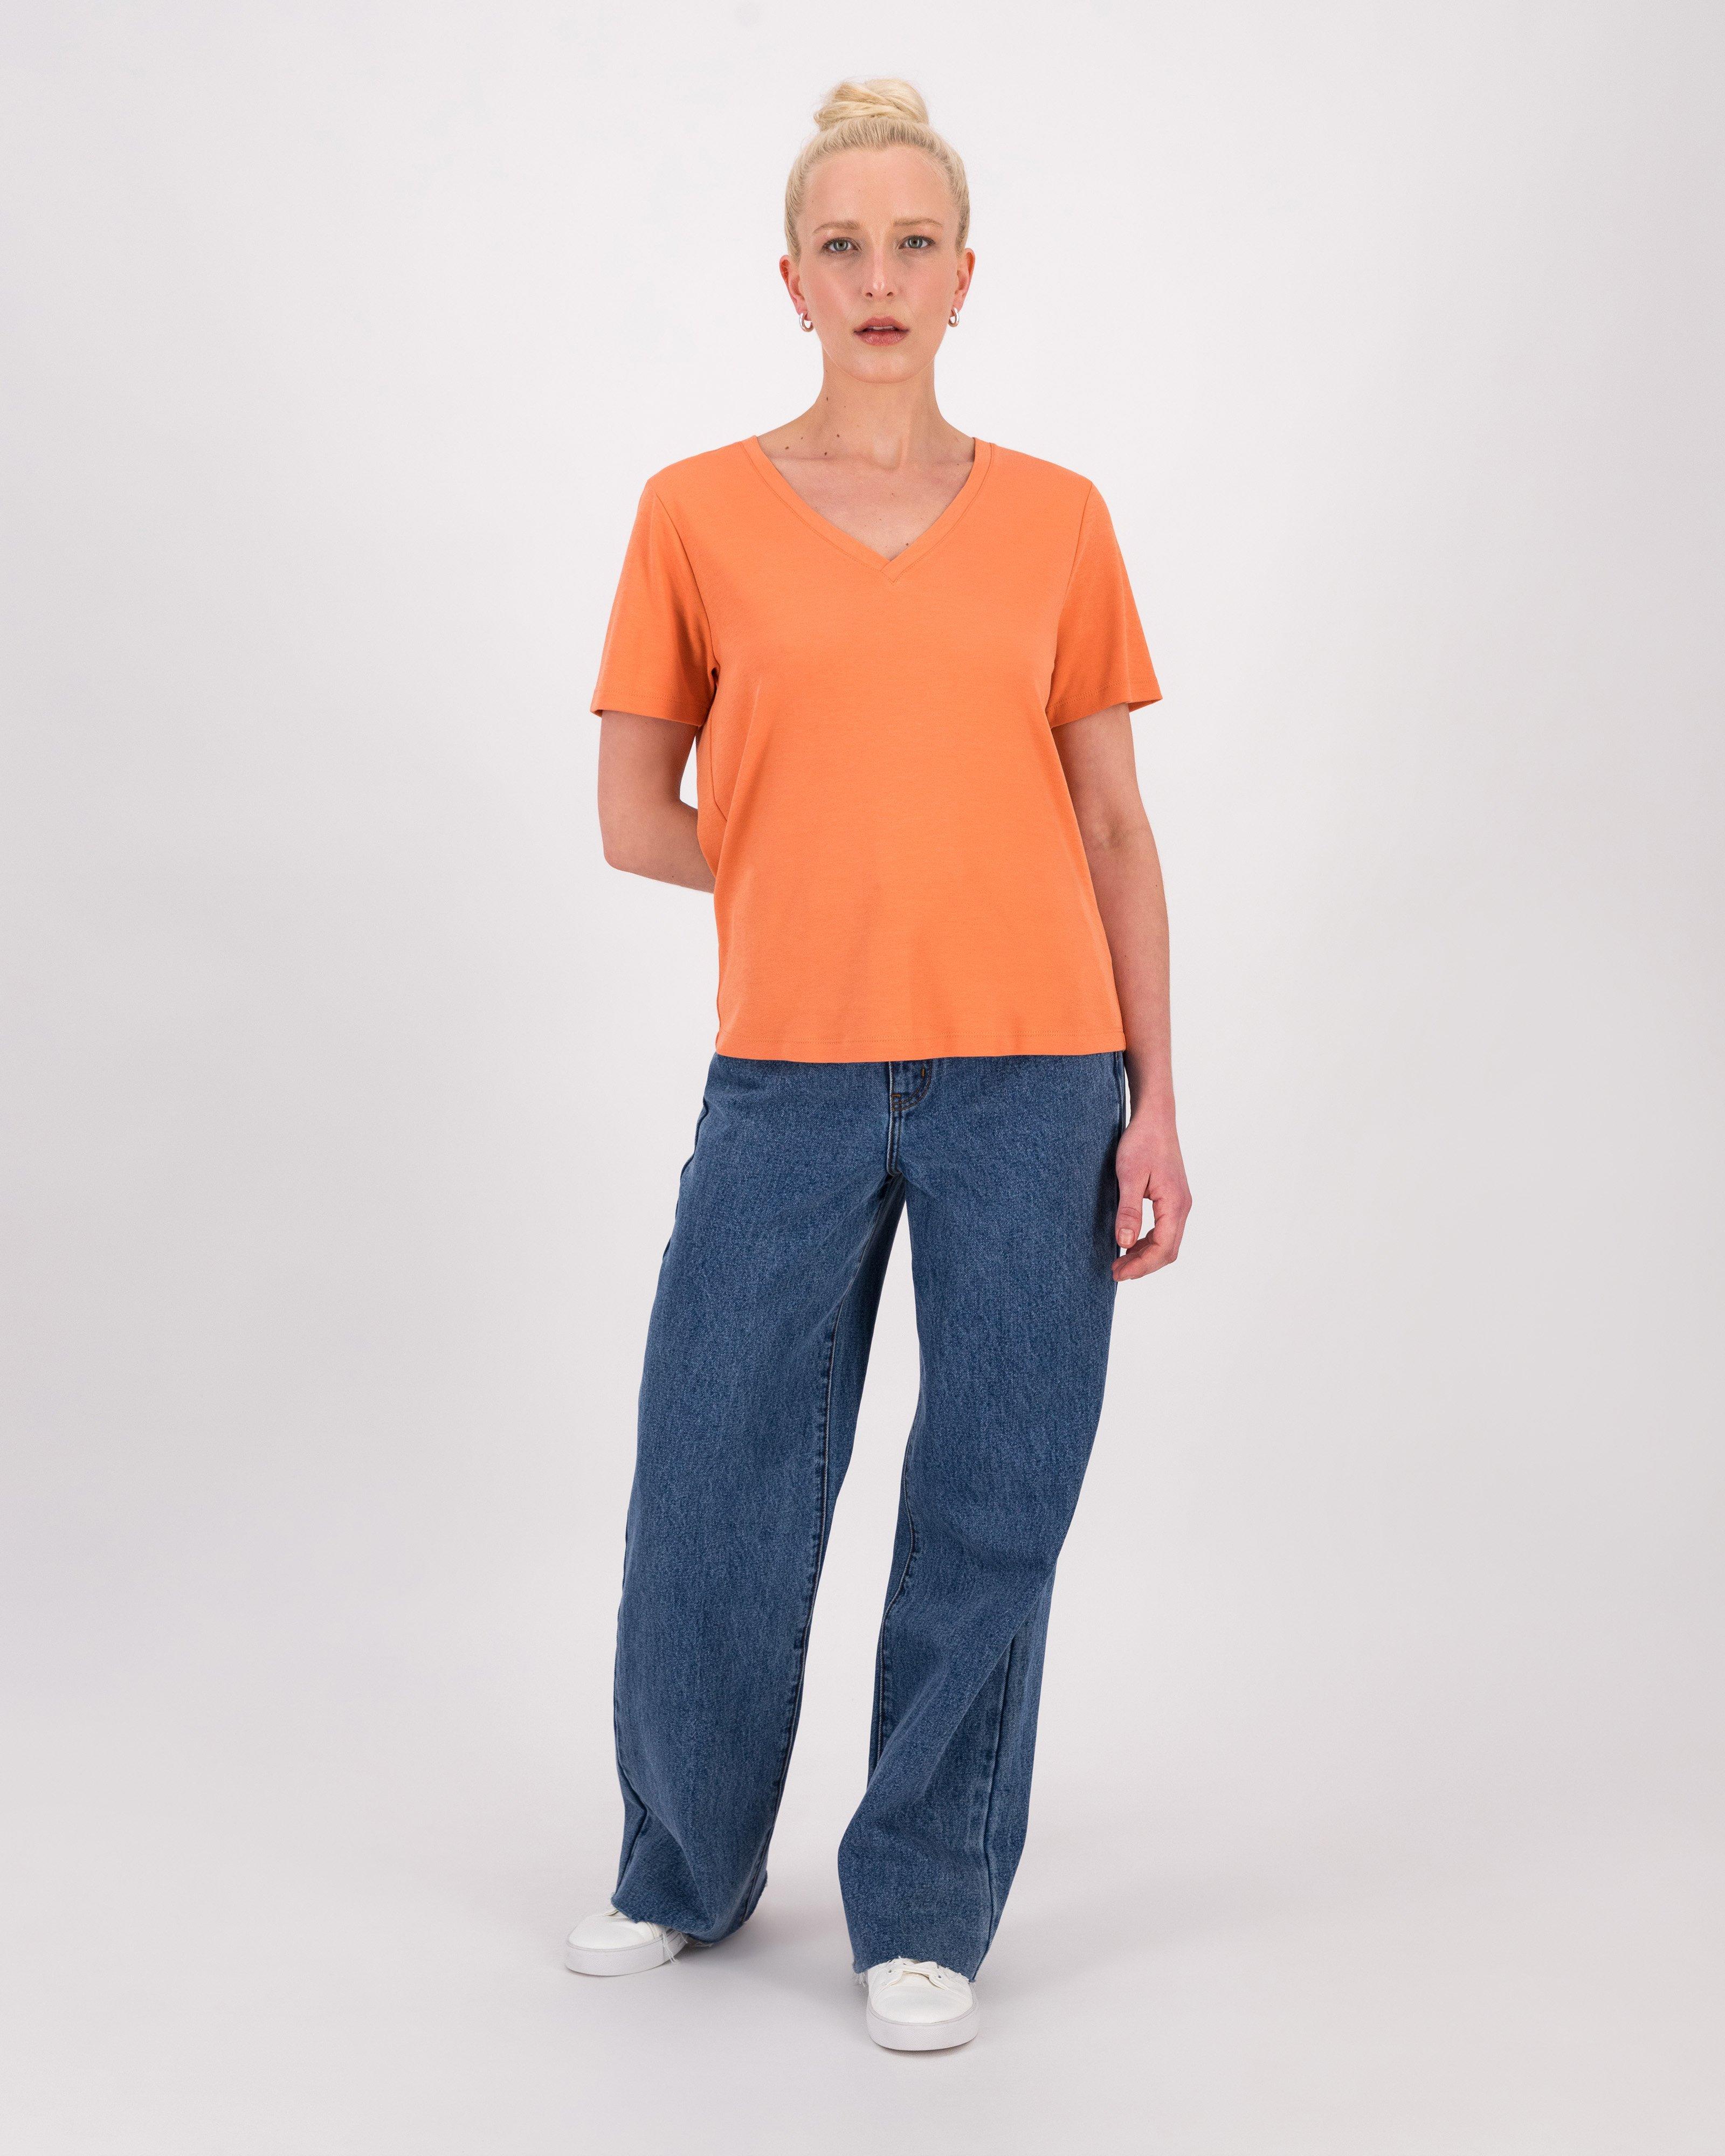 Liv V-Neck T-Shirt -  Orange